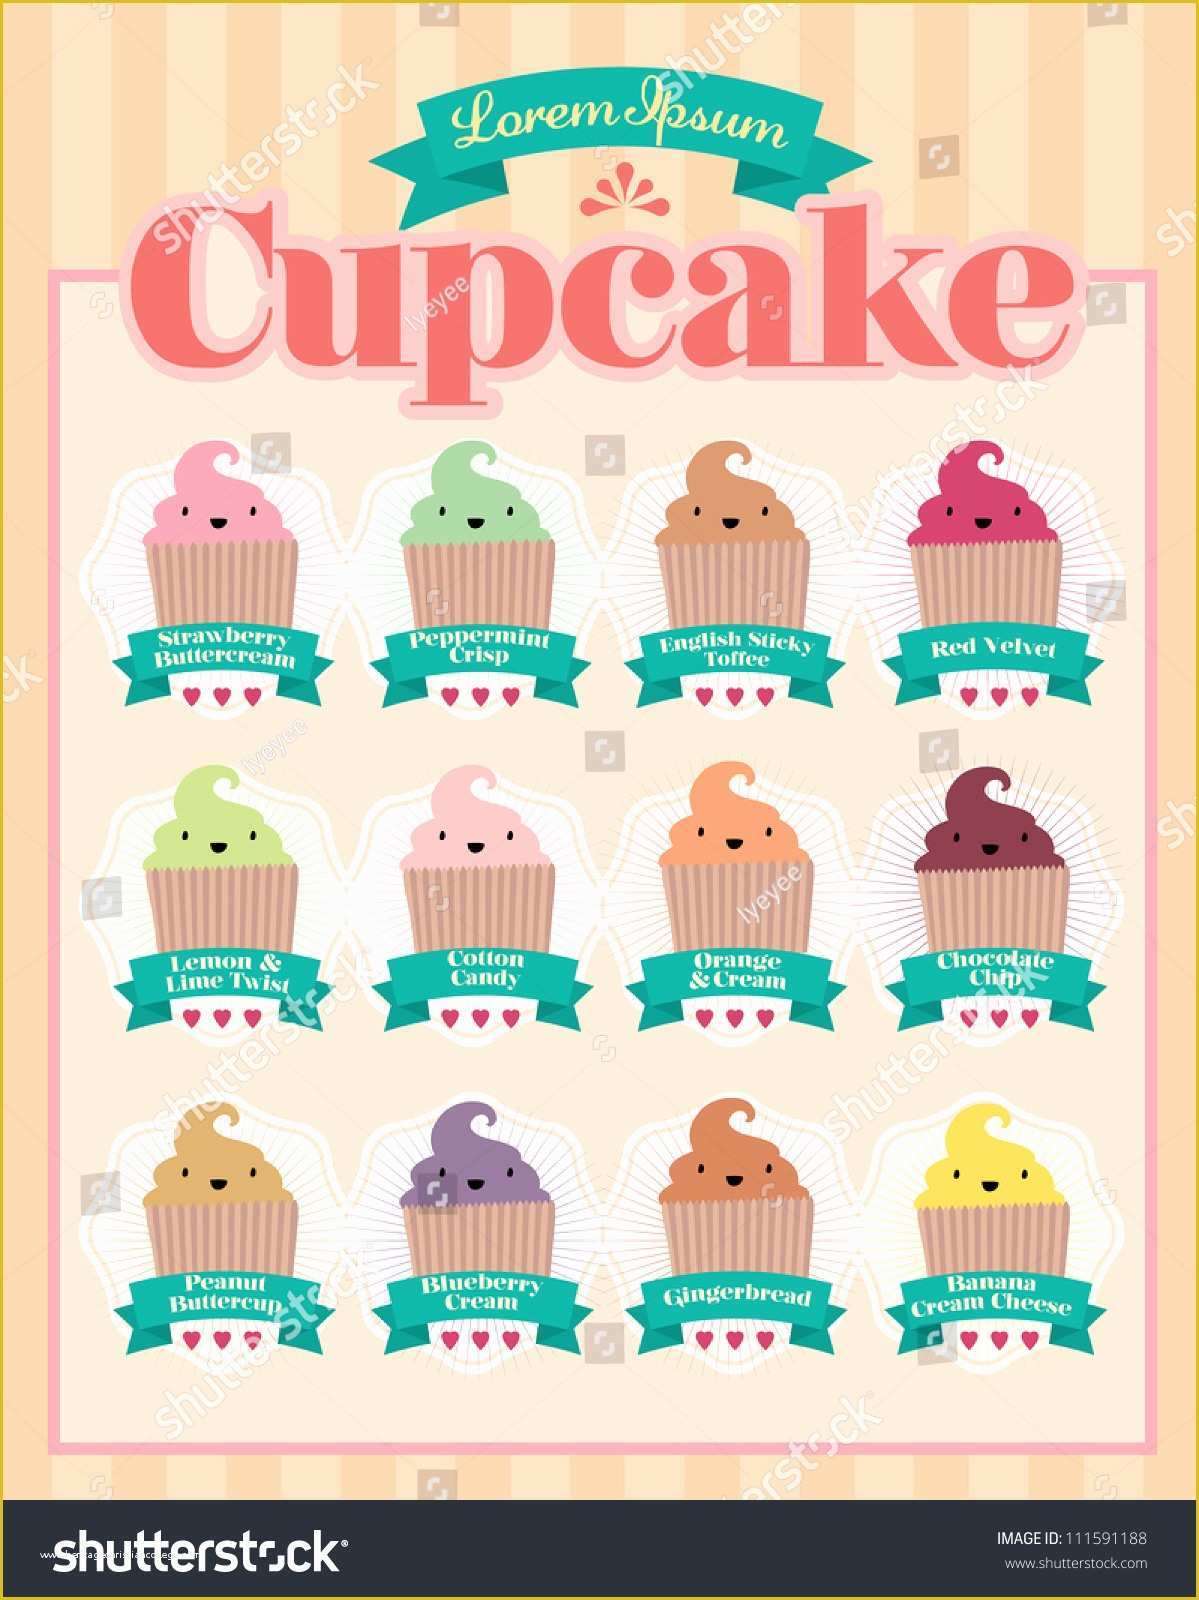 Free Cupcake Menu Template Of Cupcake Menu Template Vectorillustration Stock Vector